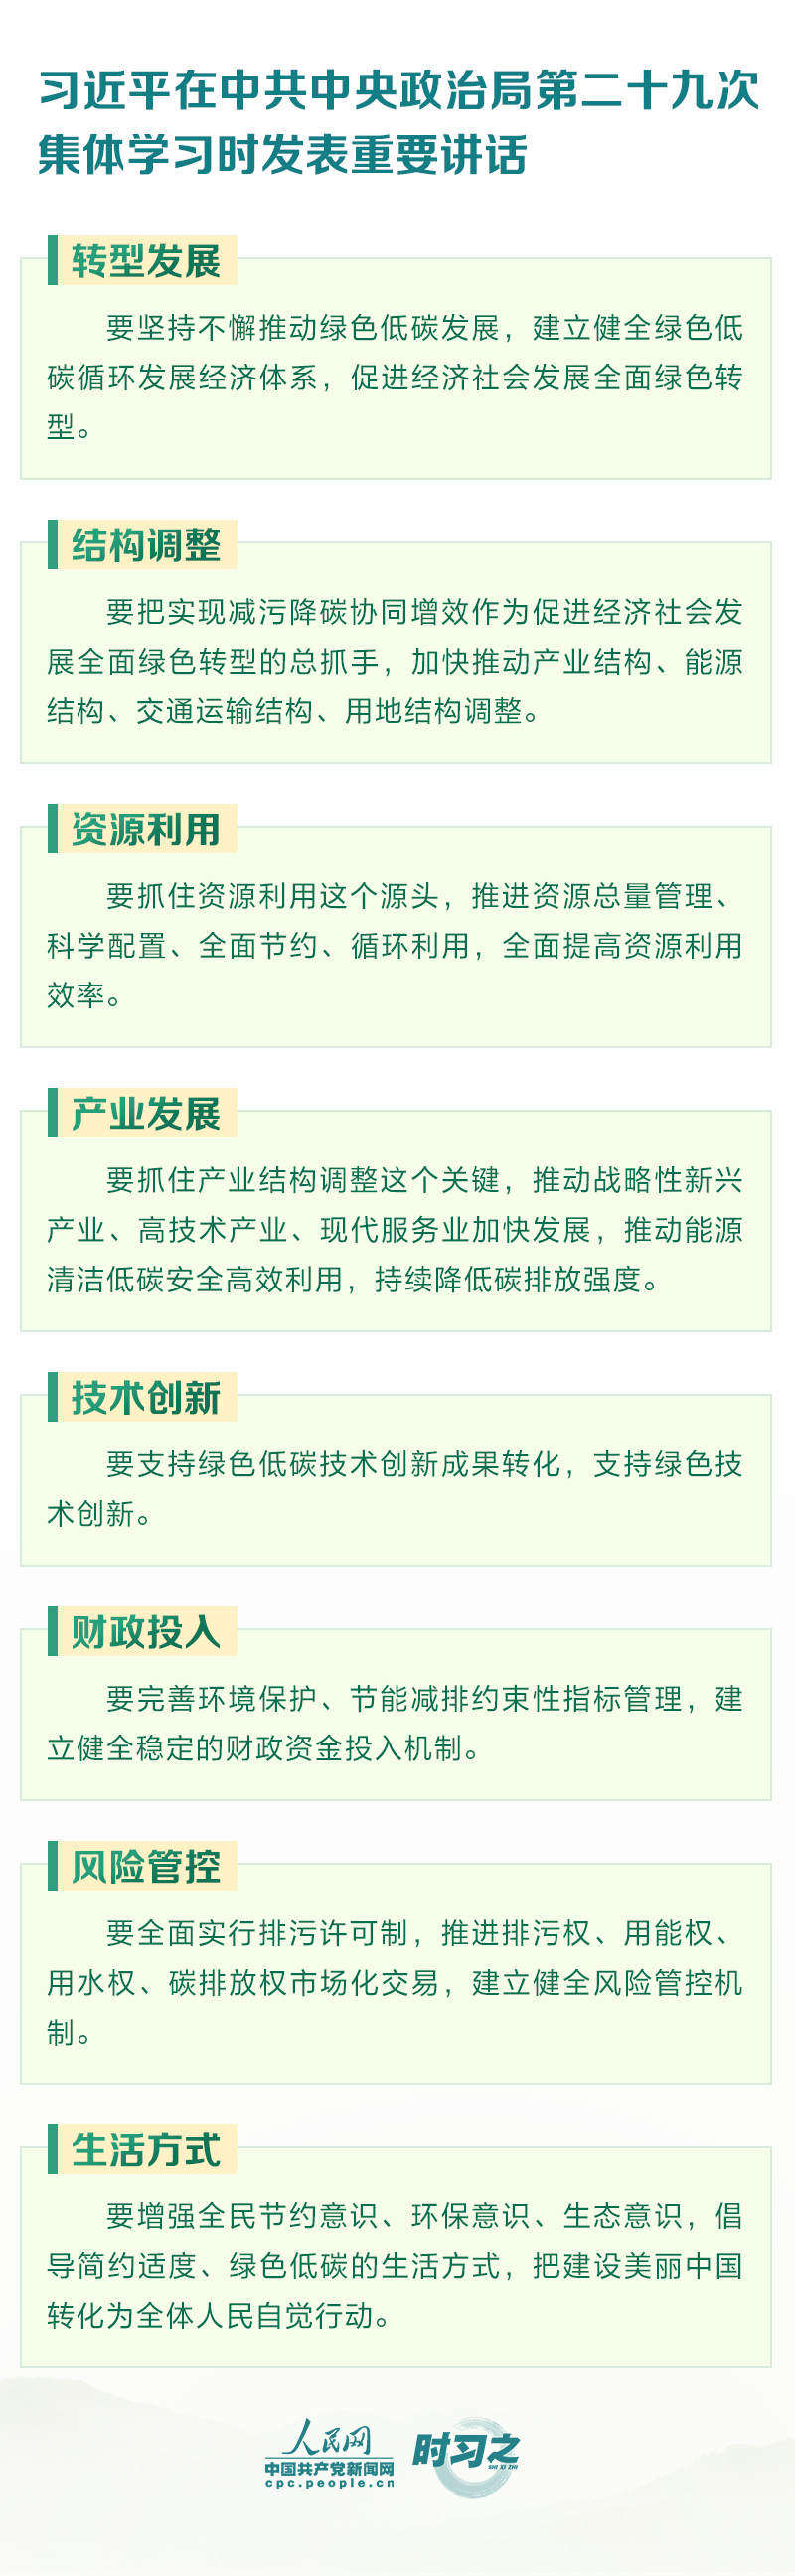 促进人与自然和谐共生 人民网-中国共产党新闻网.jpg